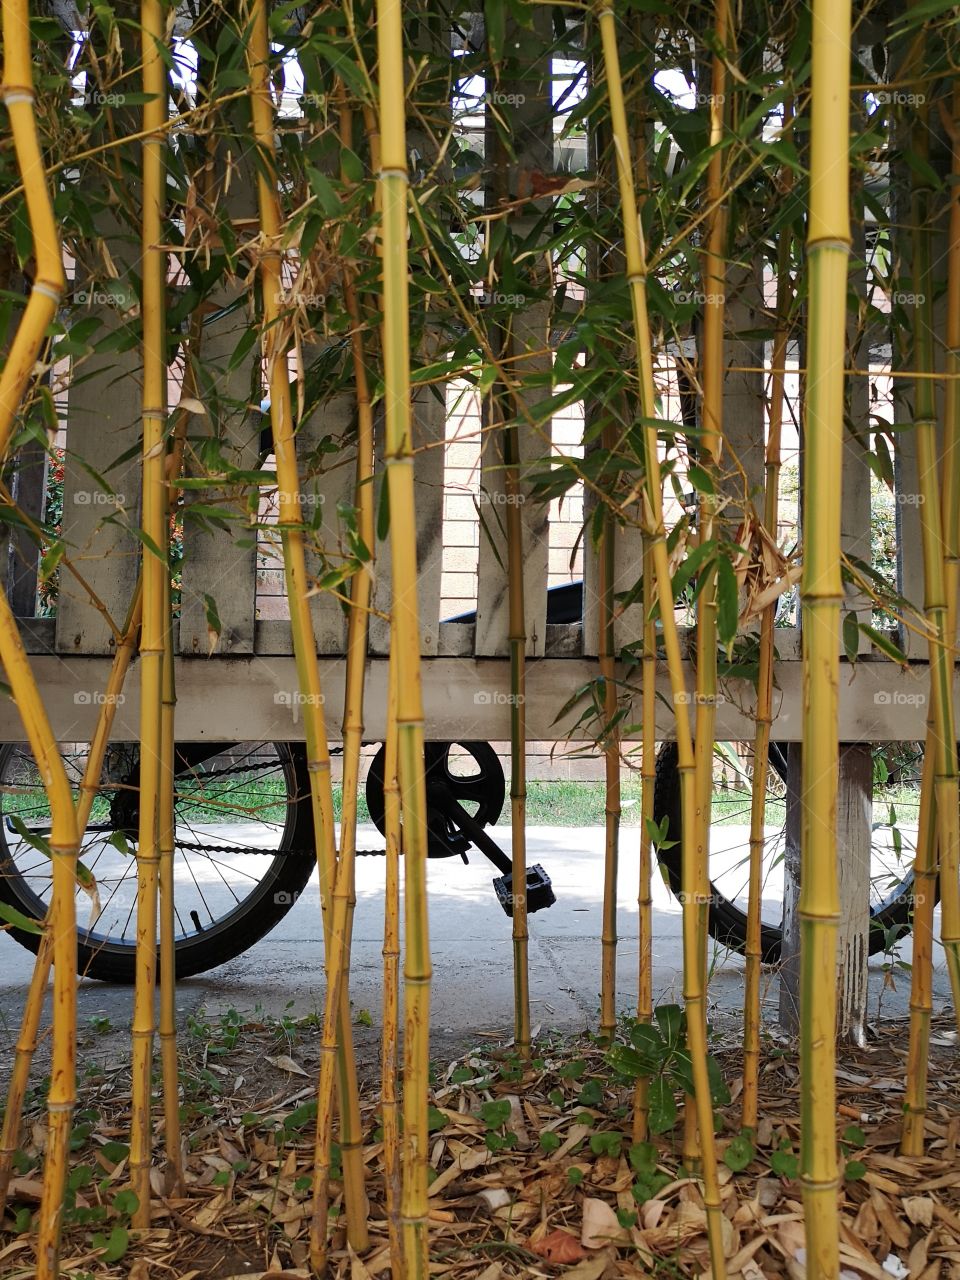 Bike and bamboo